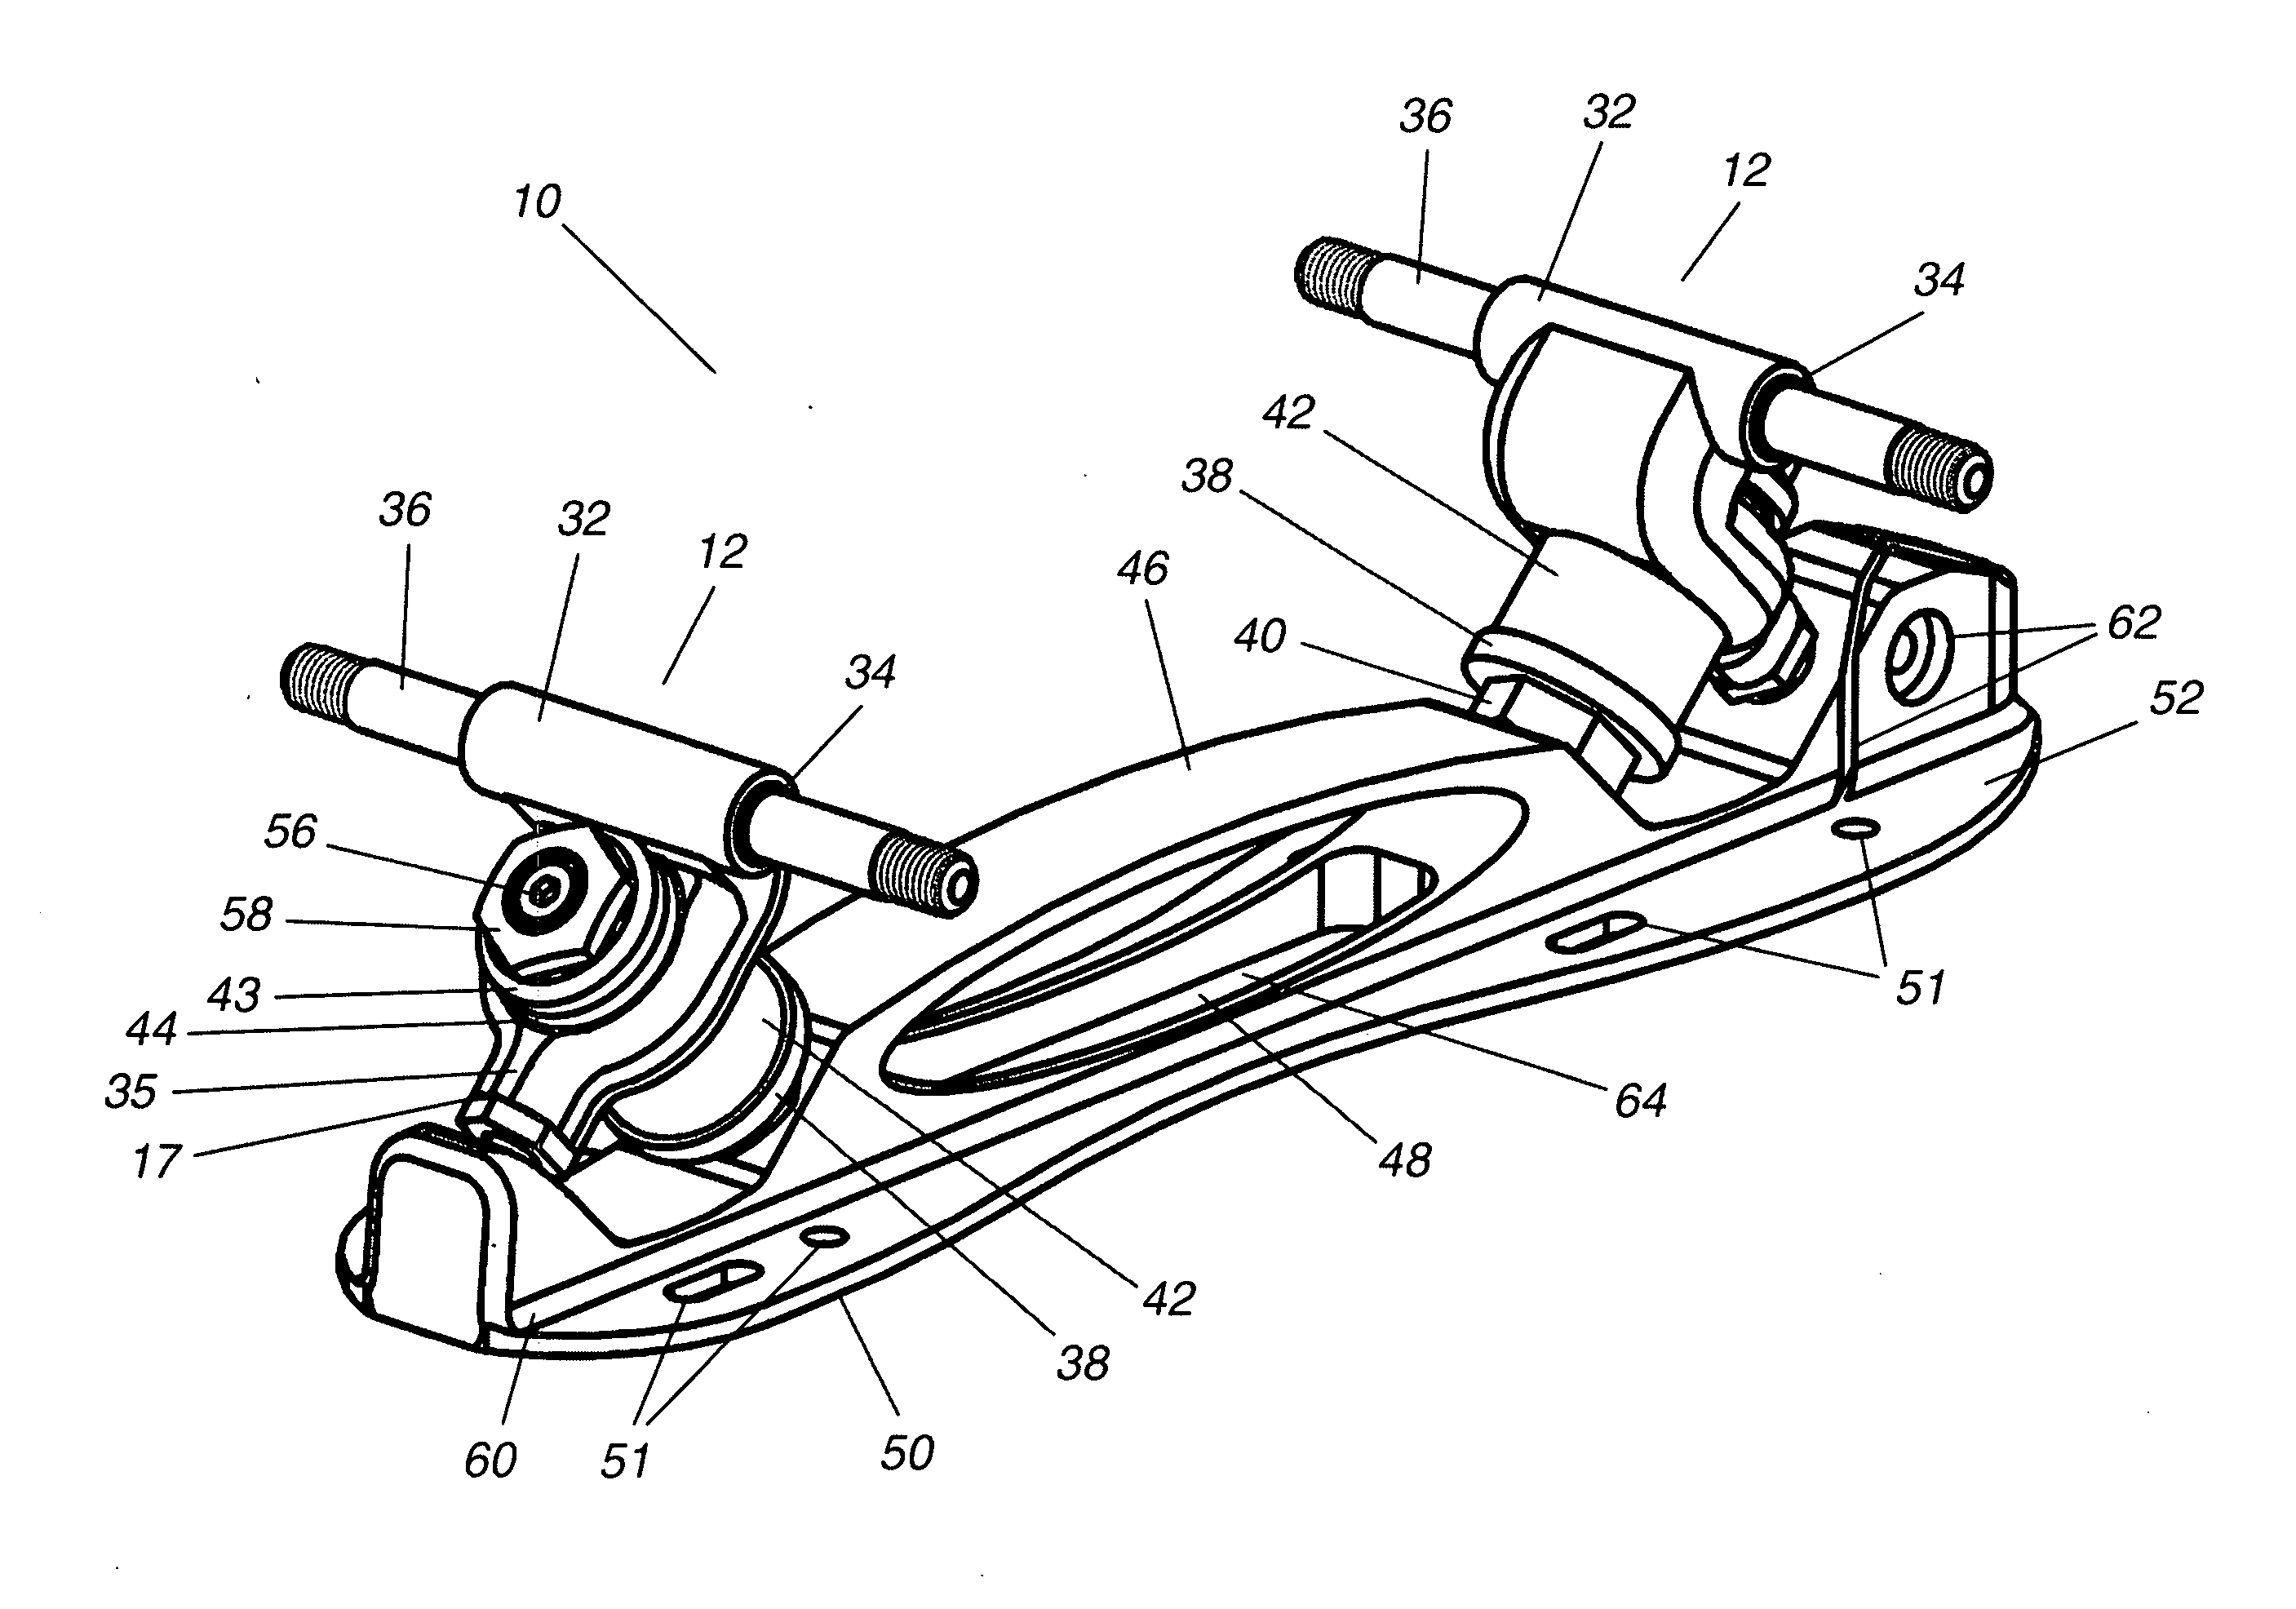 Roller Skate steering and suspension mechanism